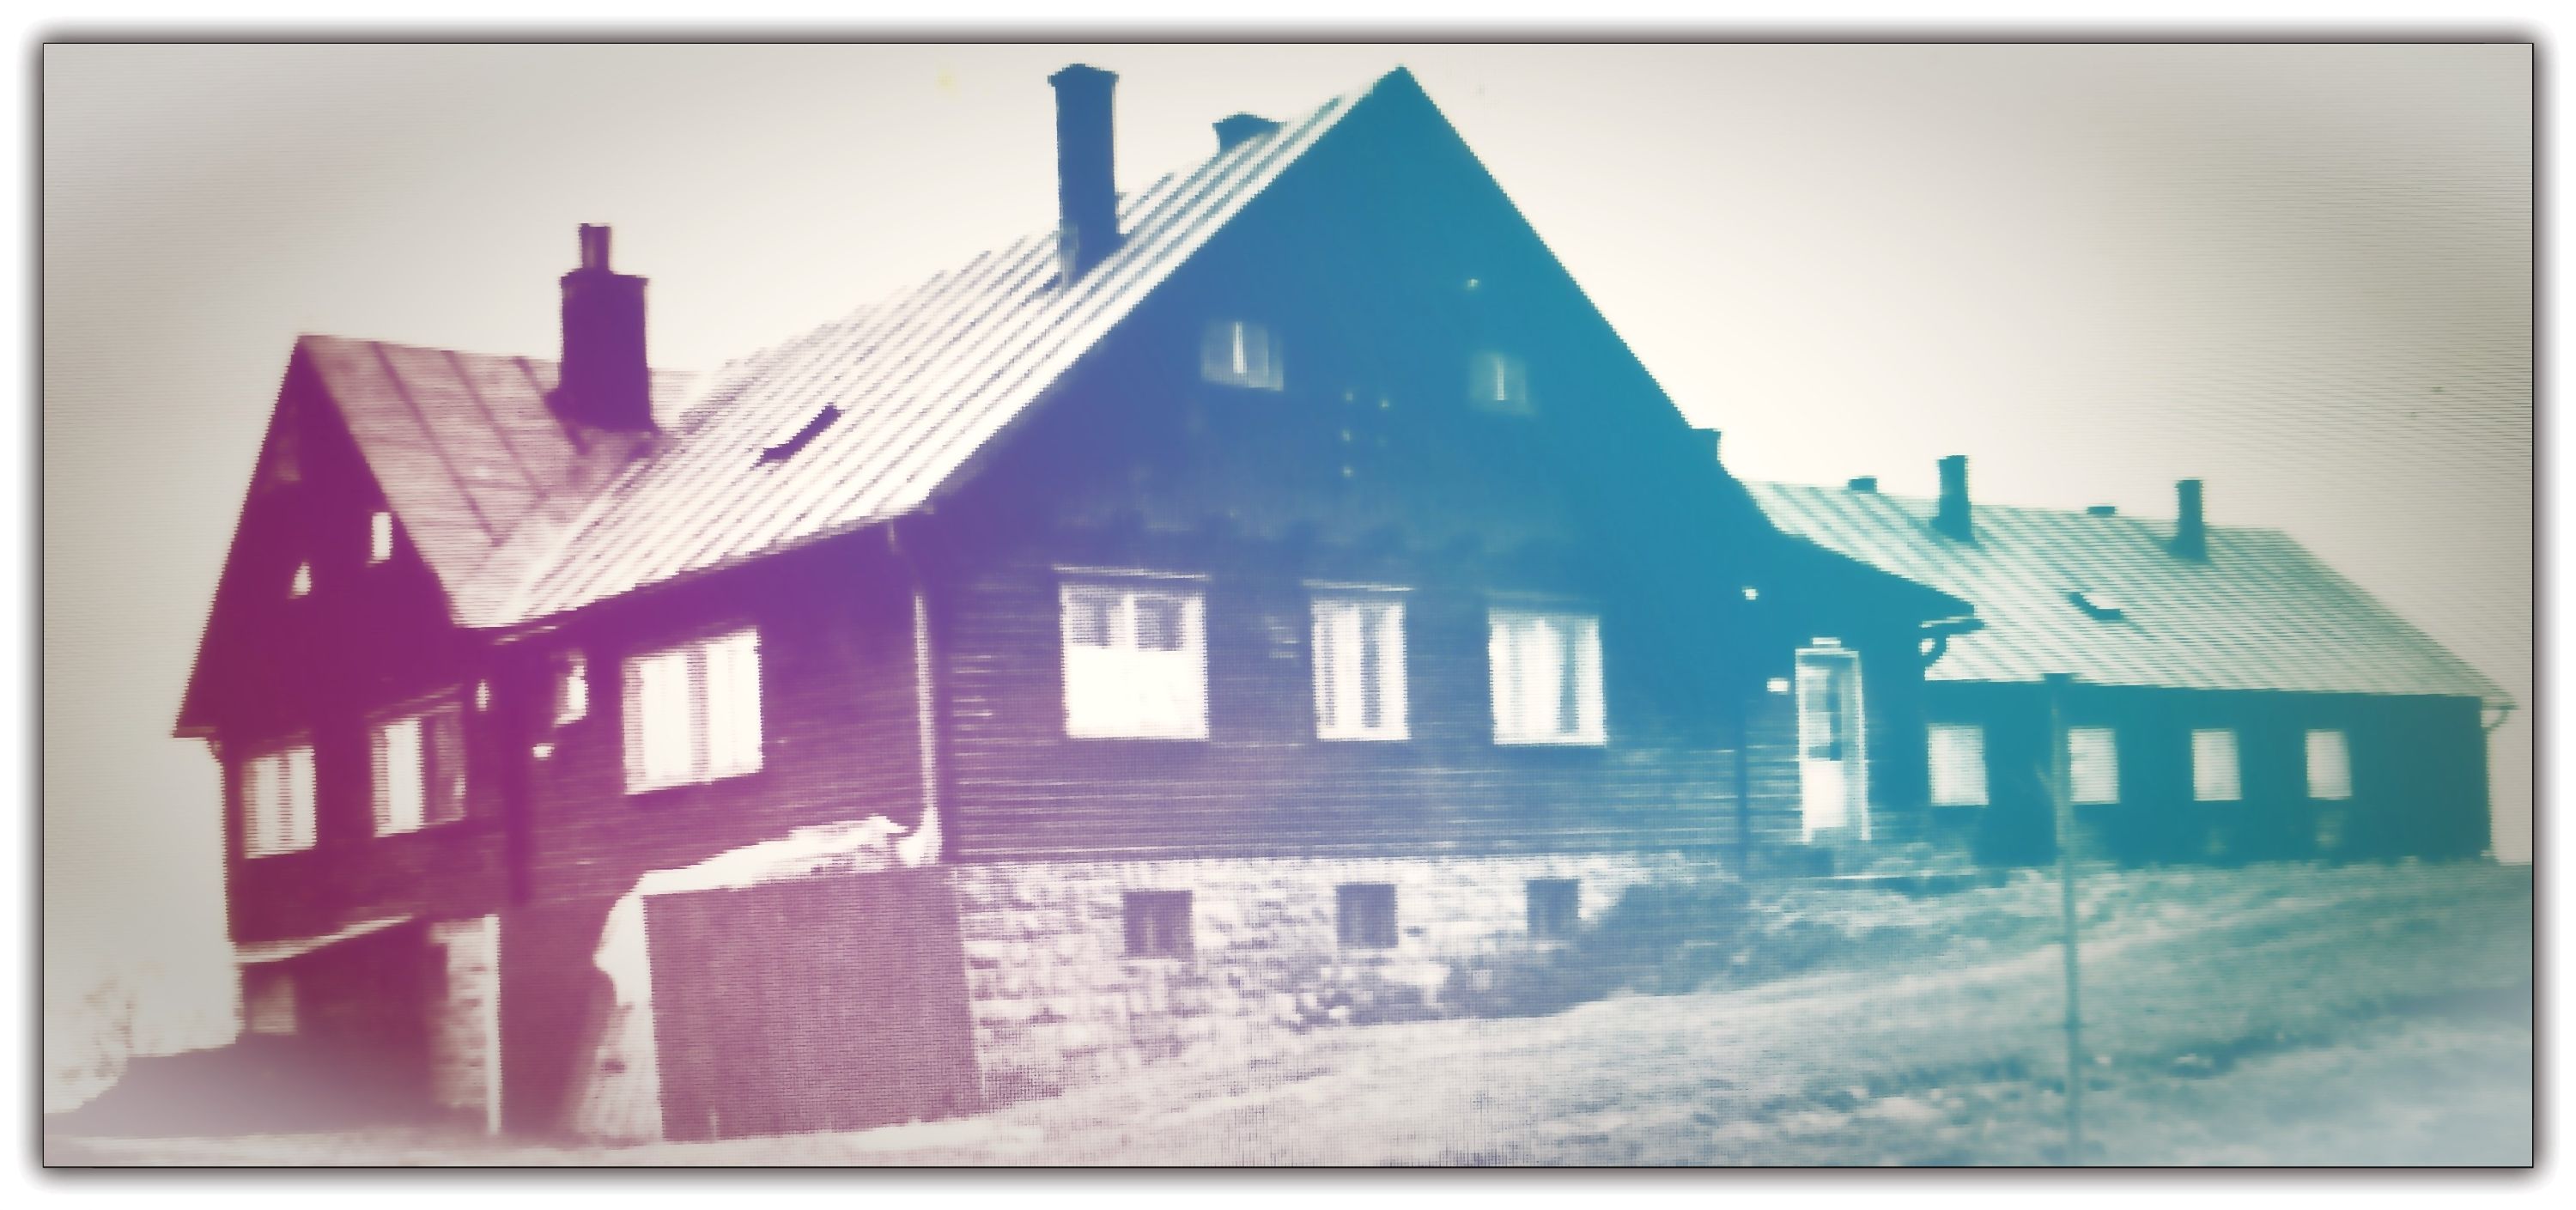 Zakaz-Valašská Senice, tu jsem žil v předškolním věku na přelomu 50. a 60. let.